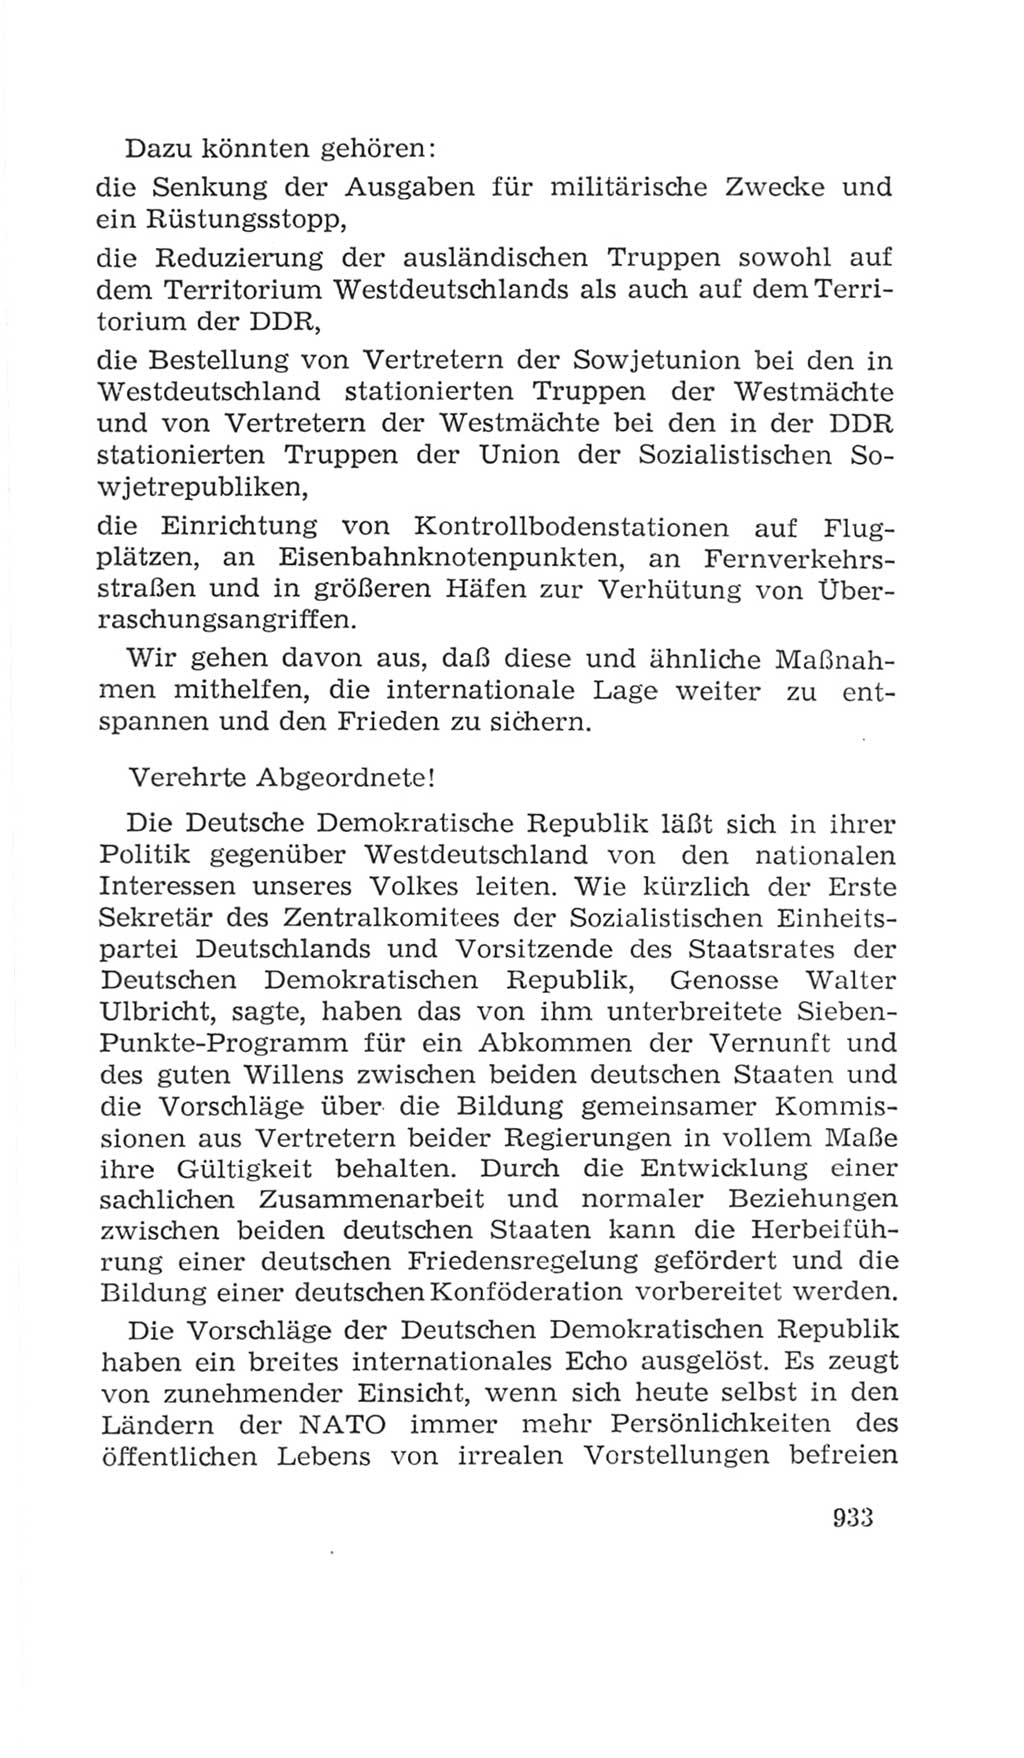 Volkskammer (VK) der Deutschen Demokratischen Republik (DDR), 4. Wahlperiode 1963-1967, Seite 933 (VK. DDR 4. WP. 1963-1967, S. 933)